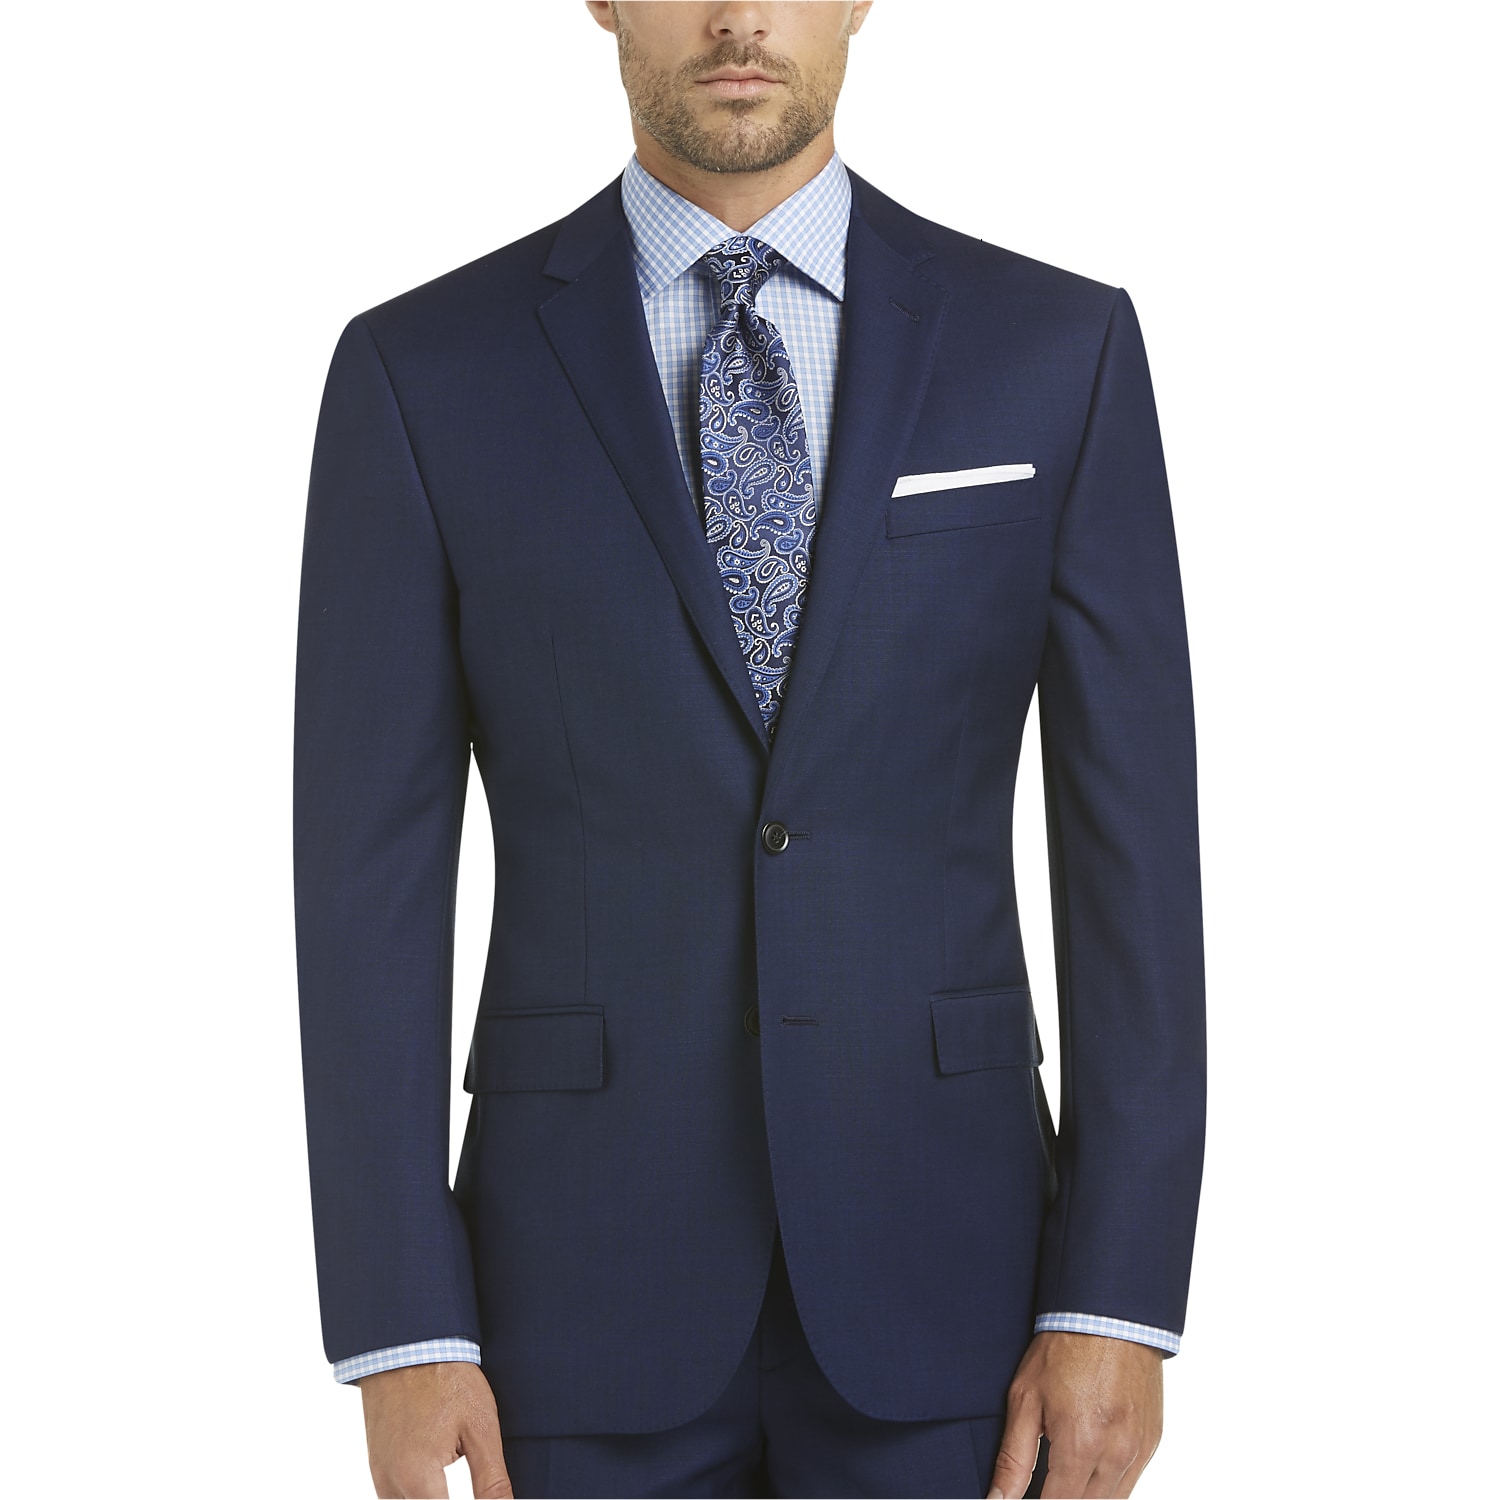 Men's Suits - Top Suit Shop Online | Men's Wearhouse